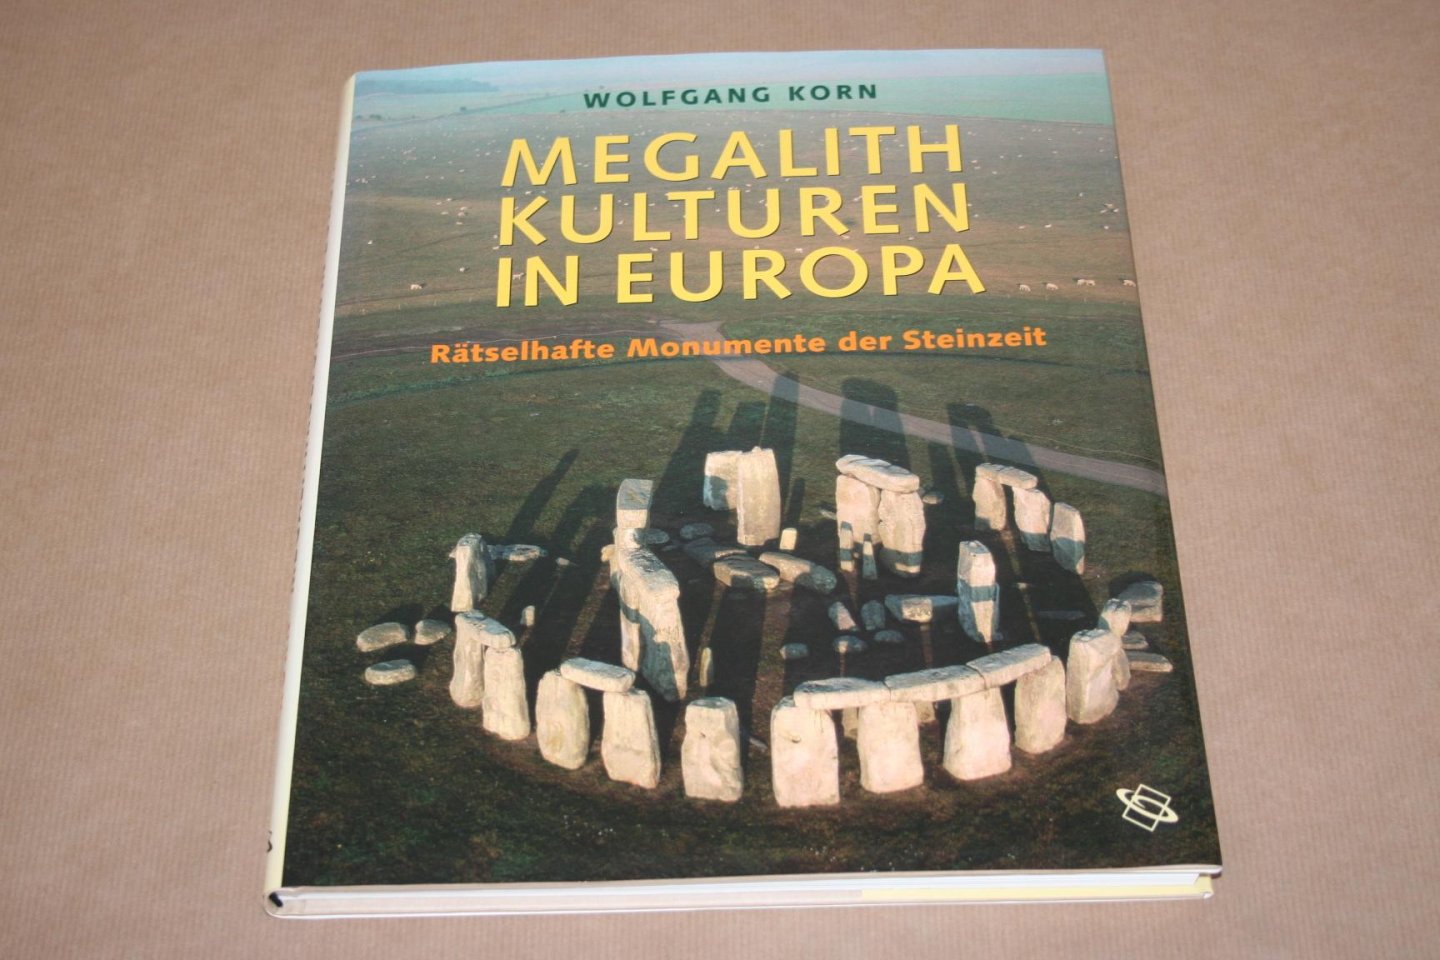 W. Korn - Megalithkulturen in Europa -- Rätselhafte Monumente der Steinzeit